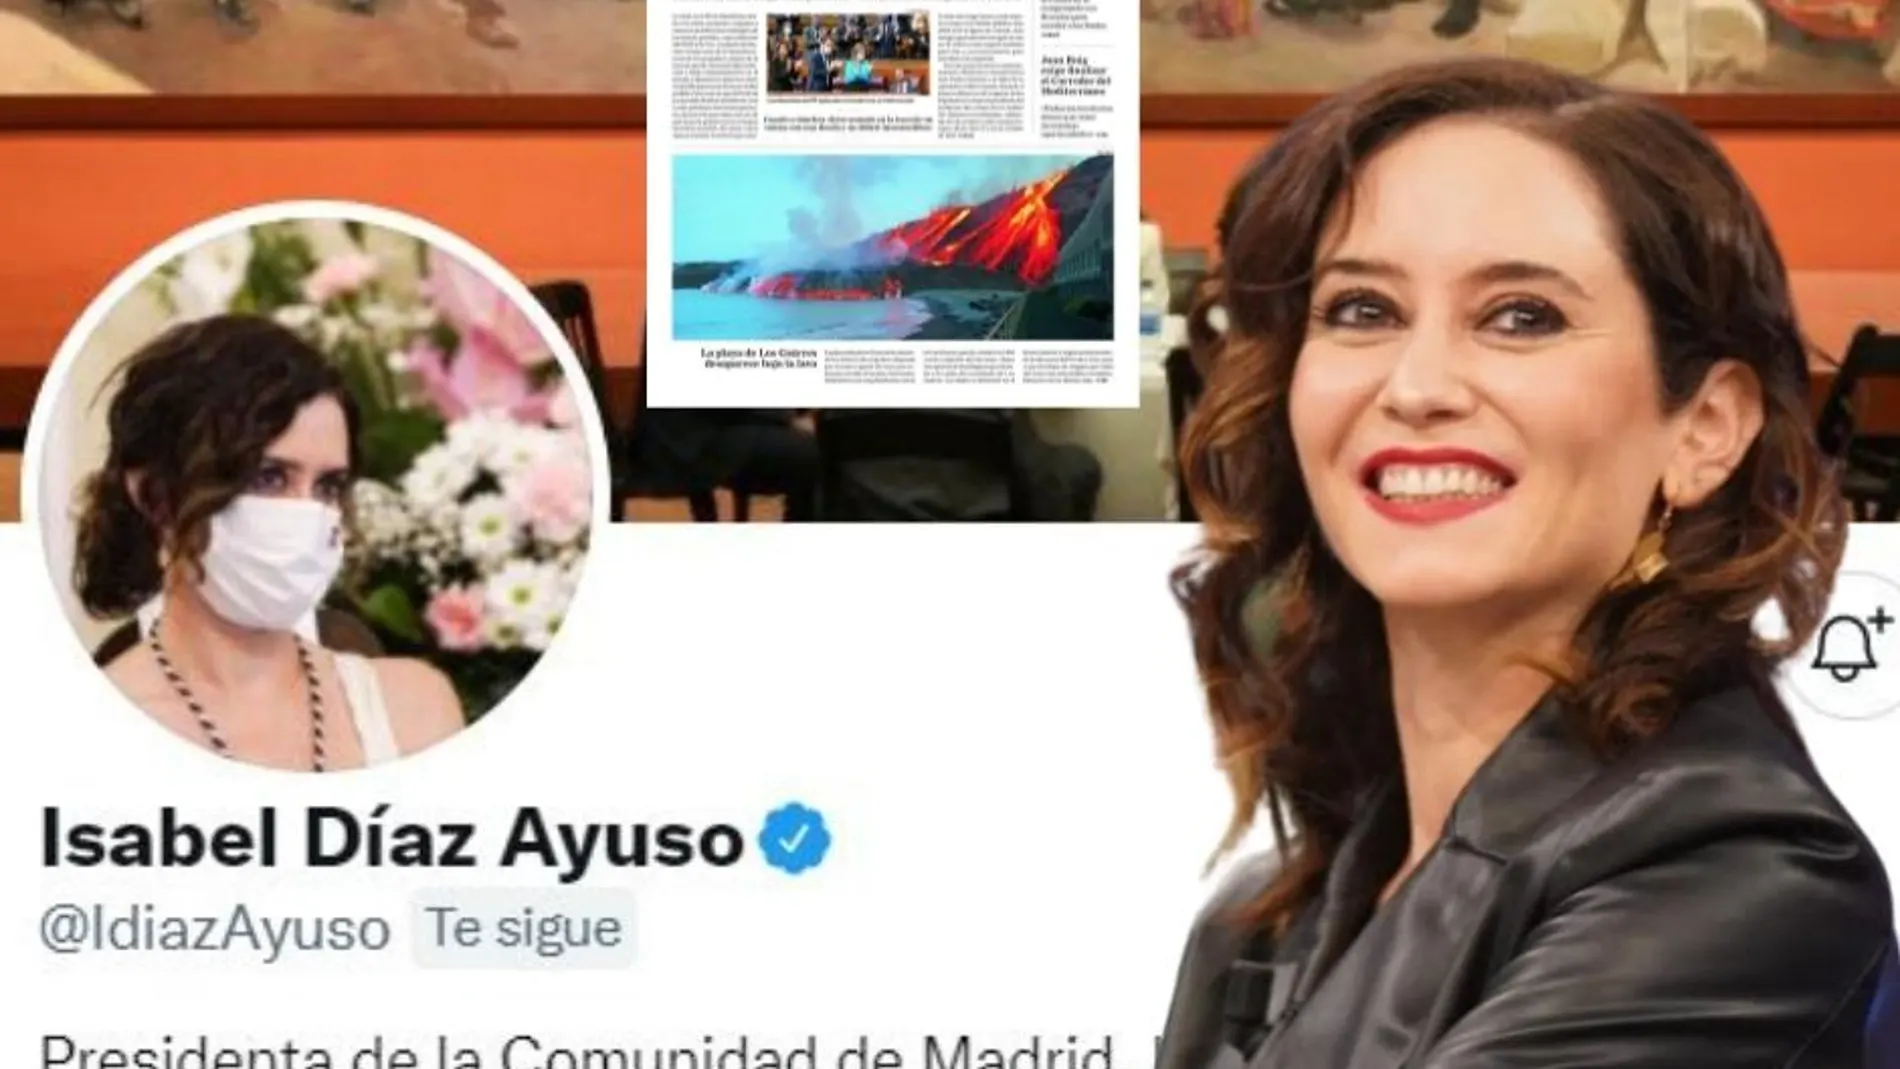 Perfil de Twitter de Isabel Díaz Ayuso